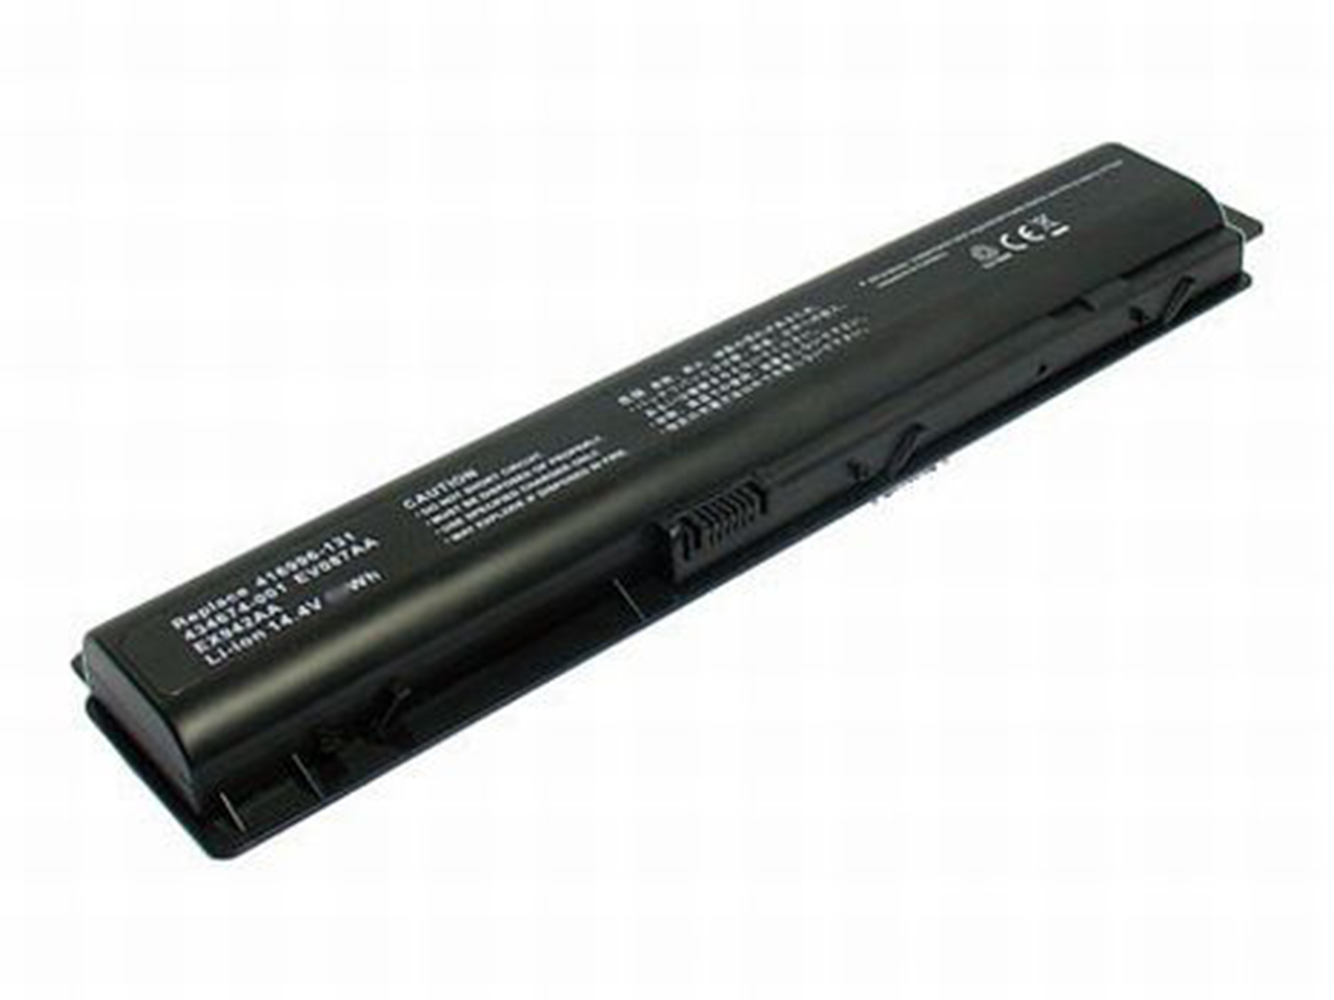 416996-131, 416996-441 replacement Laptop Battery for HP Pavilion dv9000EA, Pavilion dv9000T